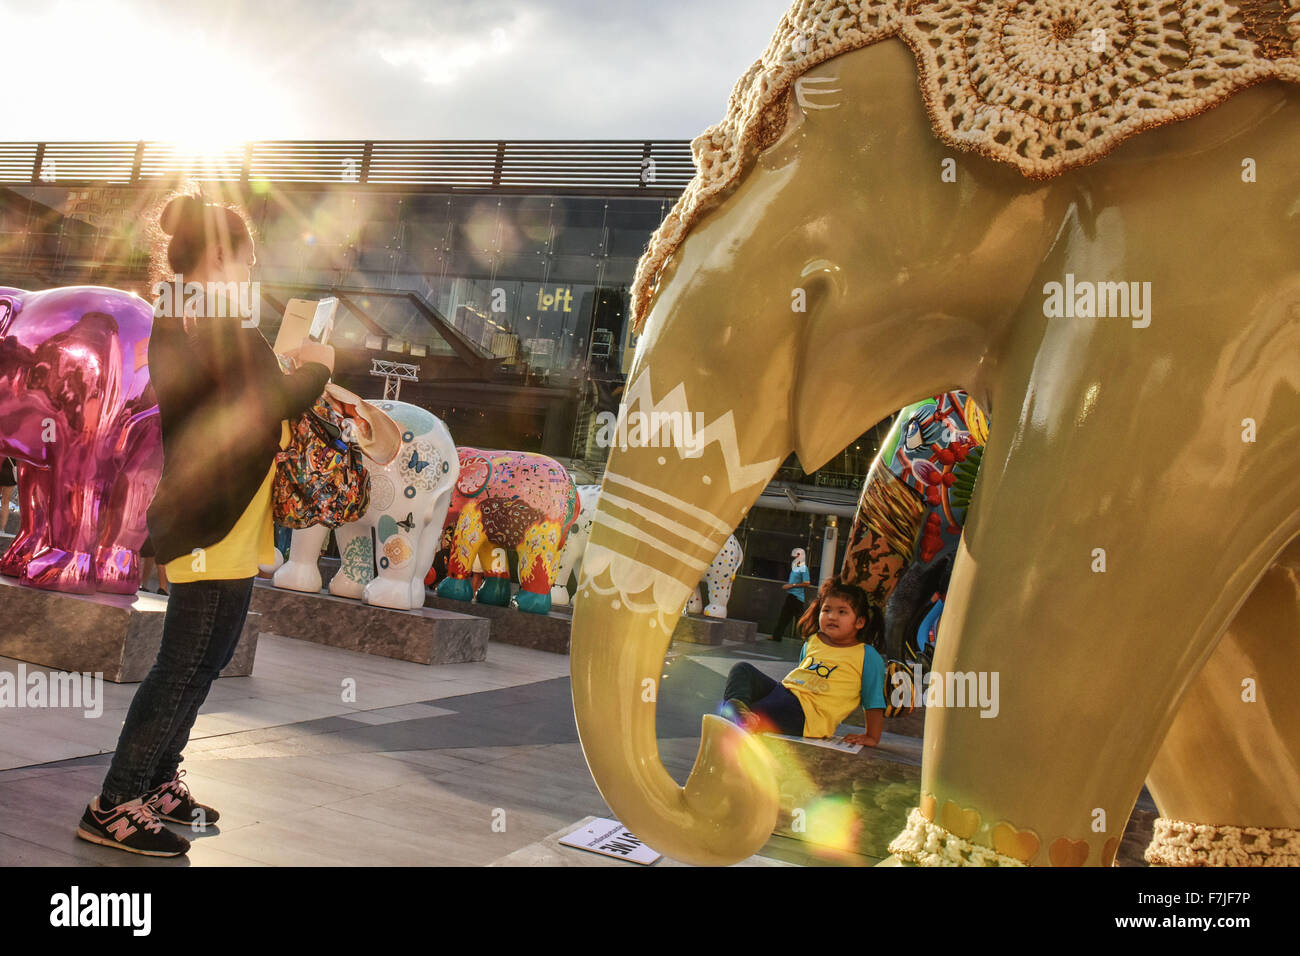 Bangkok, Thaïlande. 1er décembre 2015. Une femme prend des photos de son enfant au cours de la 'Elephant Parade Bangkok 2015" Exposition en plein air au centre-ville de Bangkok, capitale de la Thaïlande, le 1er décembre 2015. Quatre-vingt-huit statues d'éléphants colorés créés par divers artistes et célébrités ont été mis sur le spectacle à Bangkok lundi. Organisé par l'Elephant Parade, une entreprise sociale, 'Elephant Parade Bangkok 2015" vise à accroître la sensibilisation pour la conservation et le bien-être de l'éléphant d'Asie, une espèce en voie de disparition. Source : Xinhua/Alamy Live News Banque D'Images